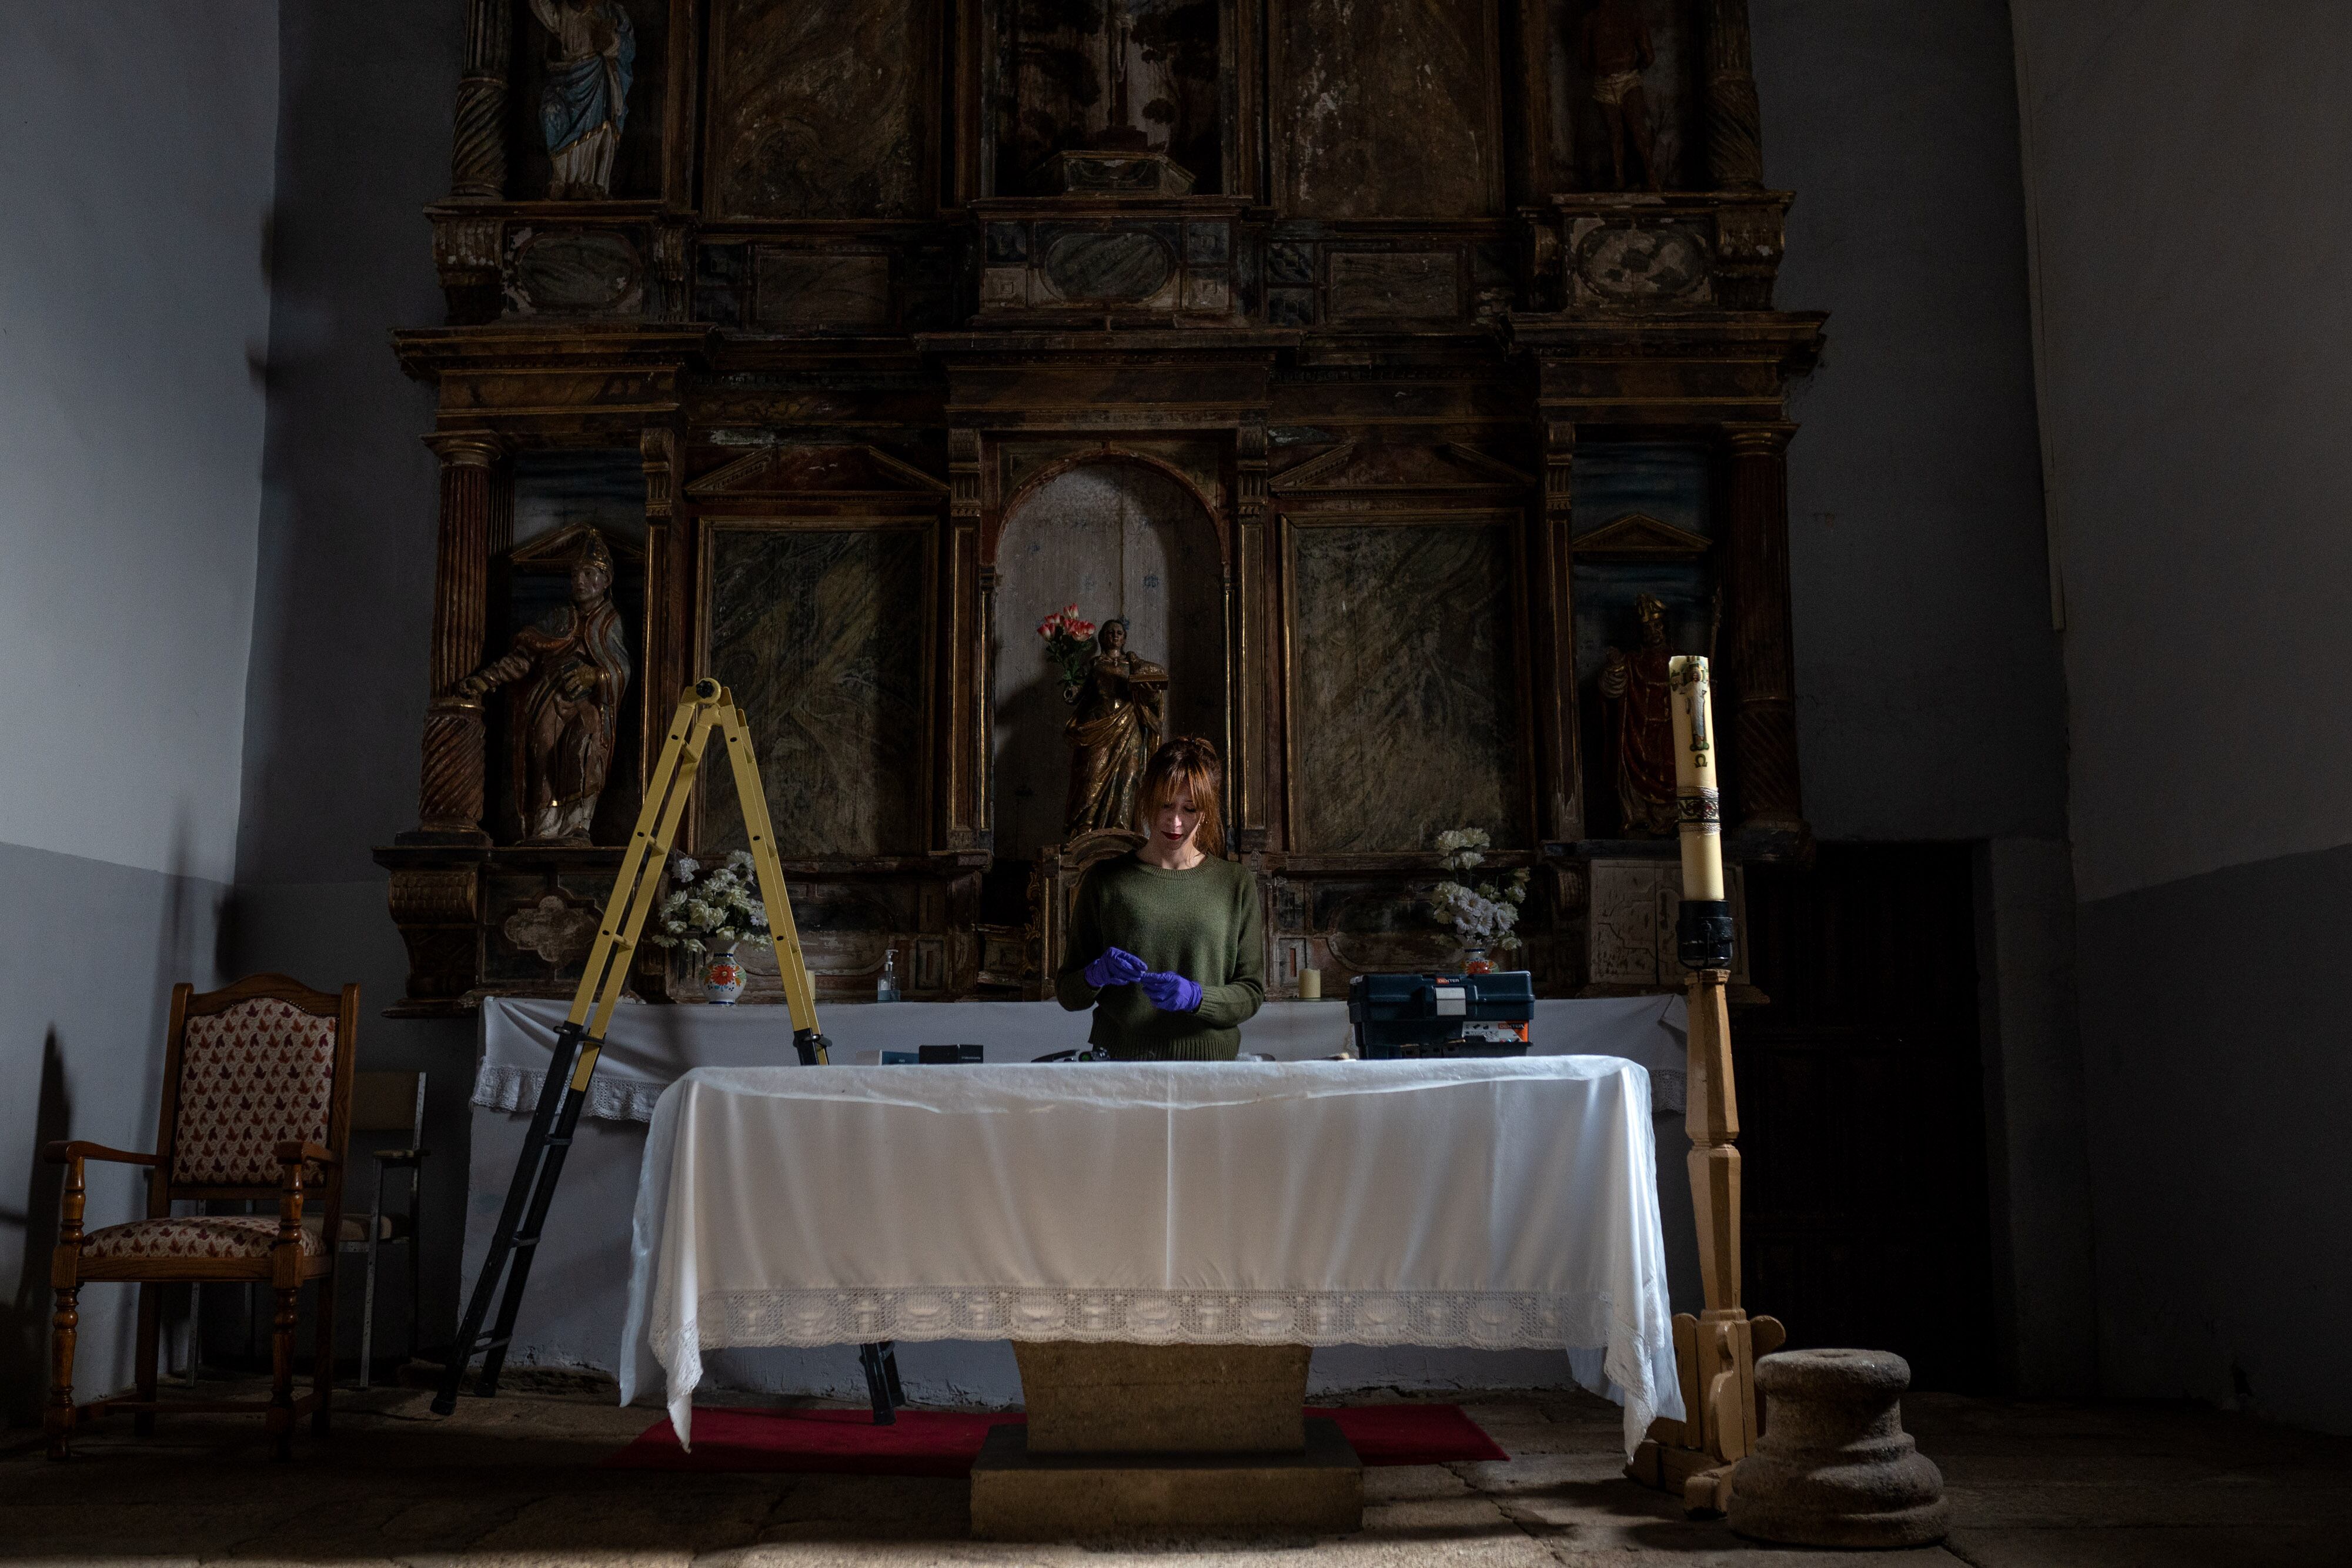 Aurora Galisteo, autora de la tesis sobre los retablos de las comarcas de Alba y Aliste, prepara el material de trabajo sobre el altar de la iglesia de Tolilla.